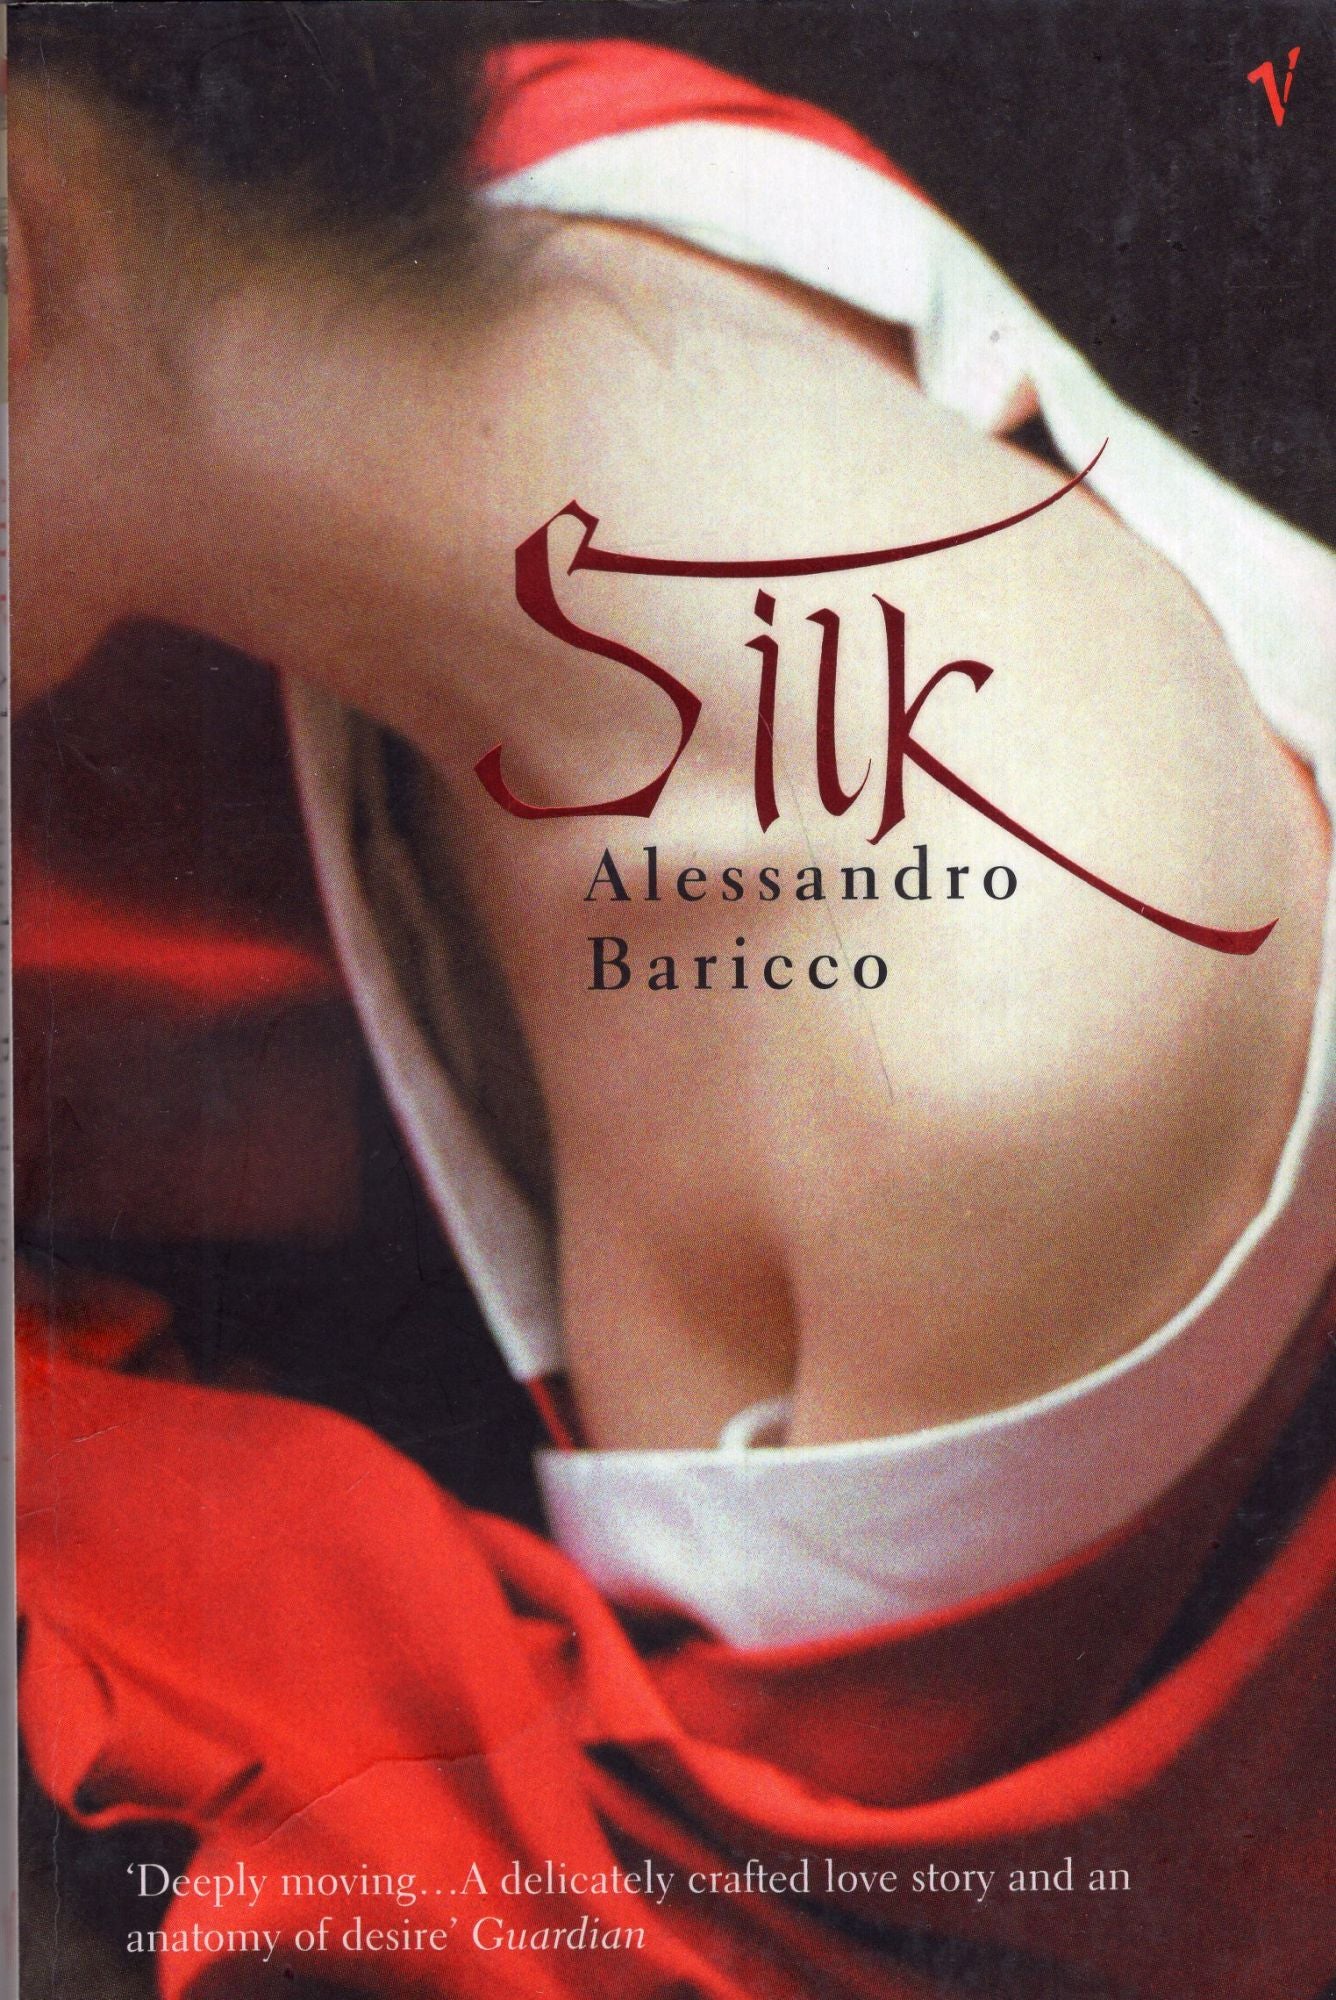 Silk  Baricco Alessandro